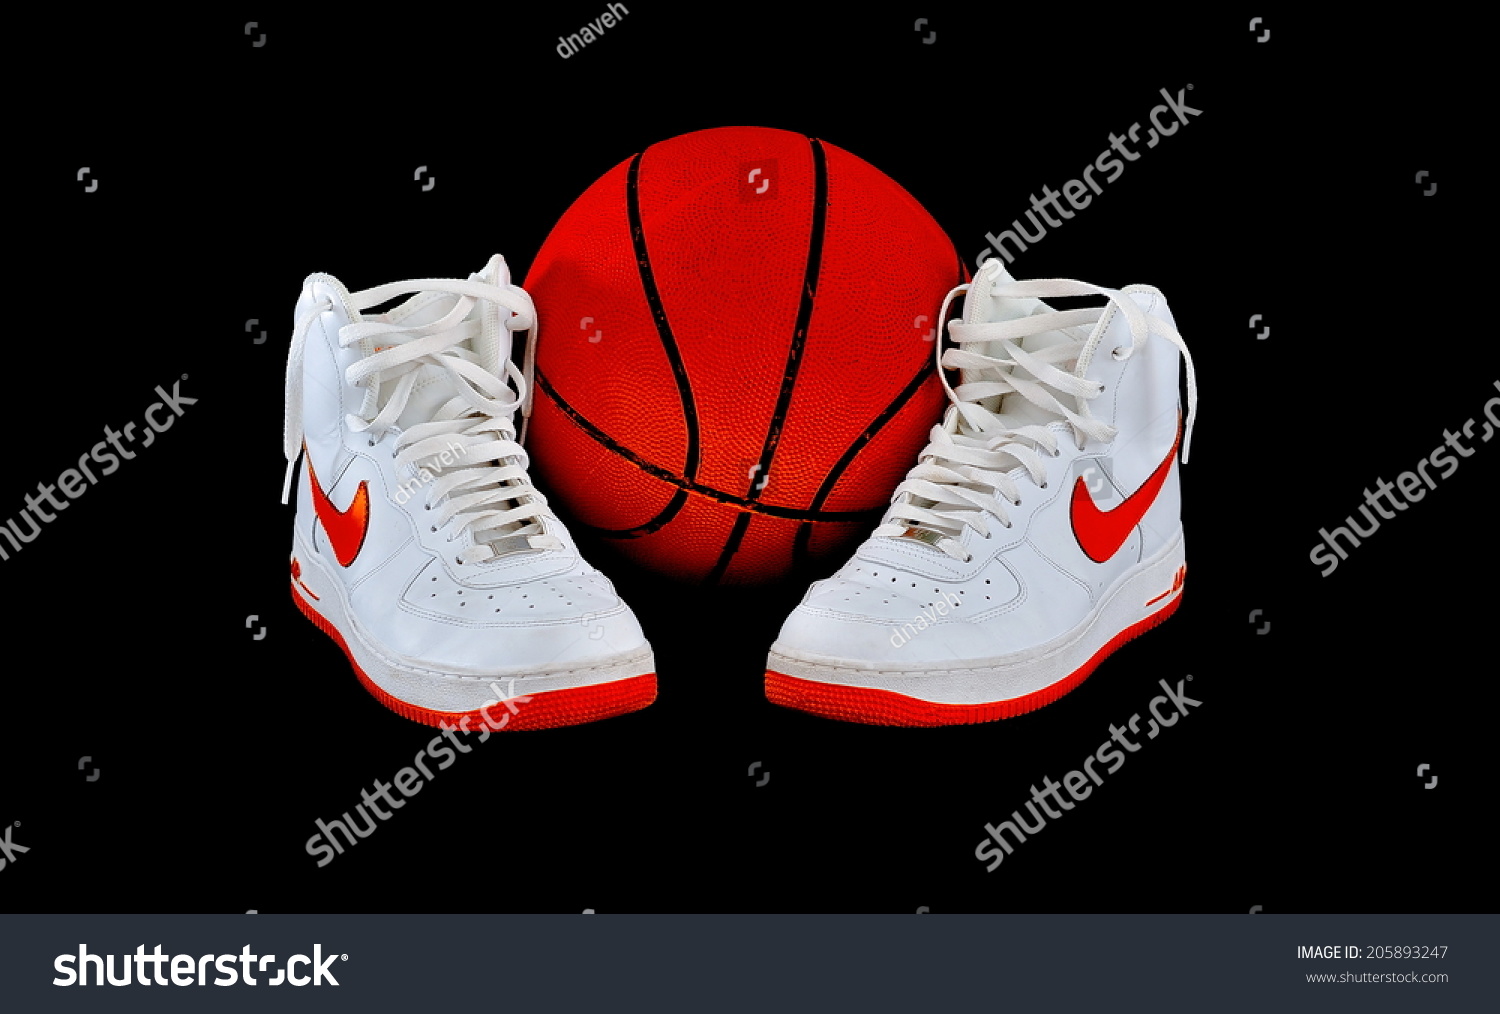 nike basketball shoes israel